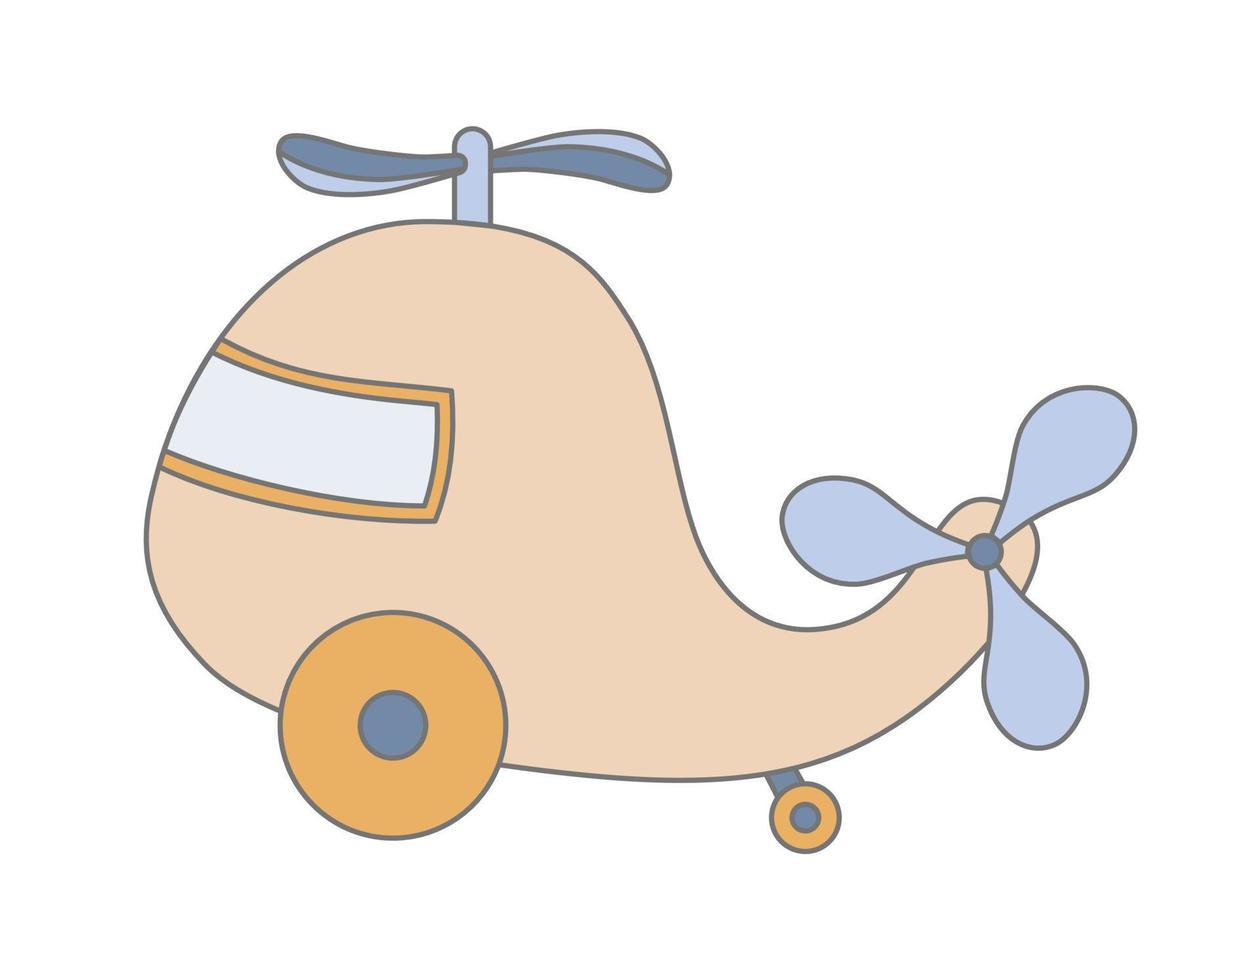 helicóptero de juguete de madera para niños. avión para niño. ilustración vectorial dibujada a mano para una infancia feliz sobre fondo blanco. lindo dibujo de avión vector